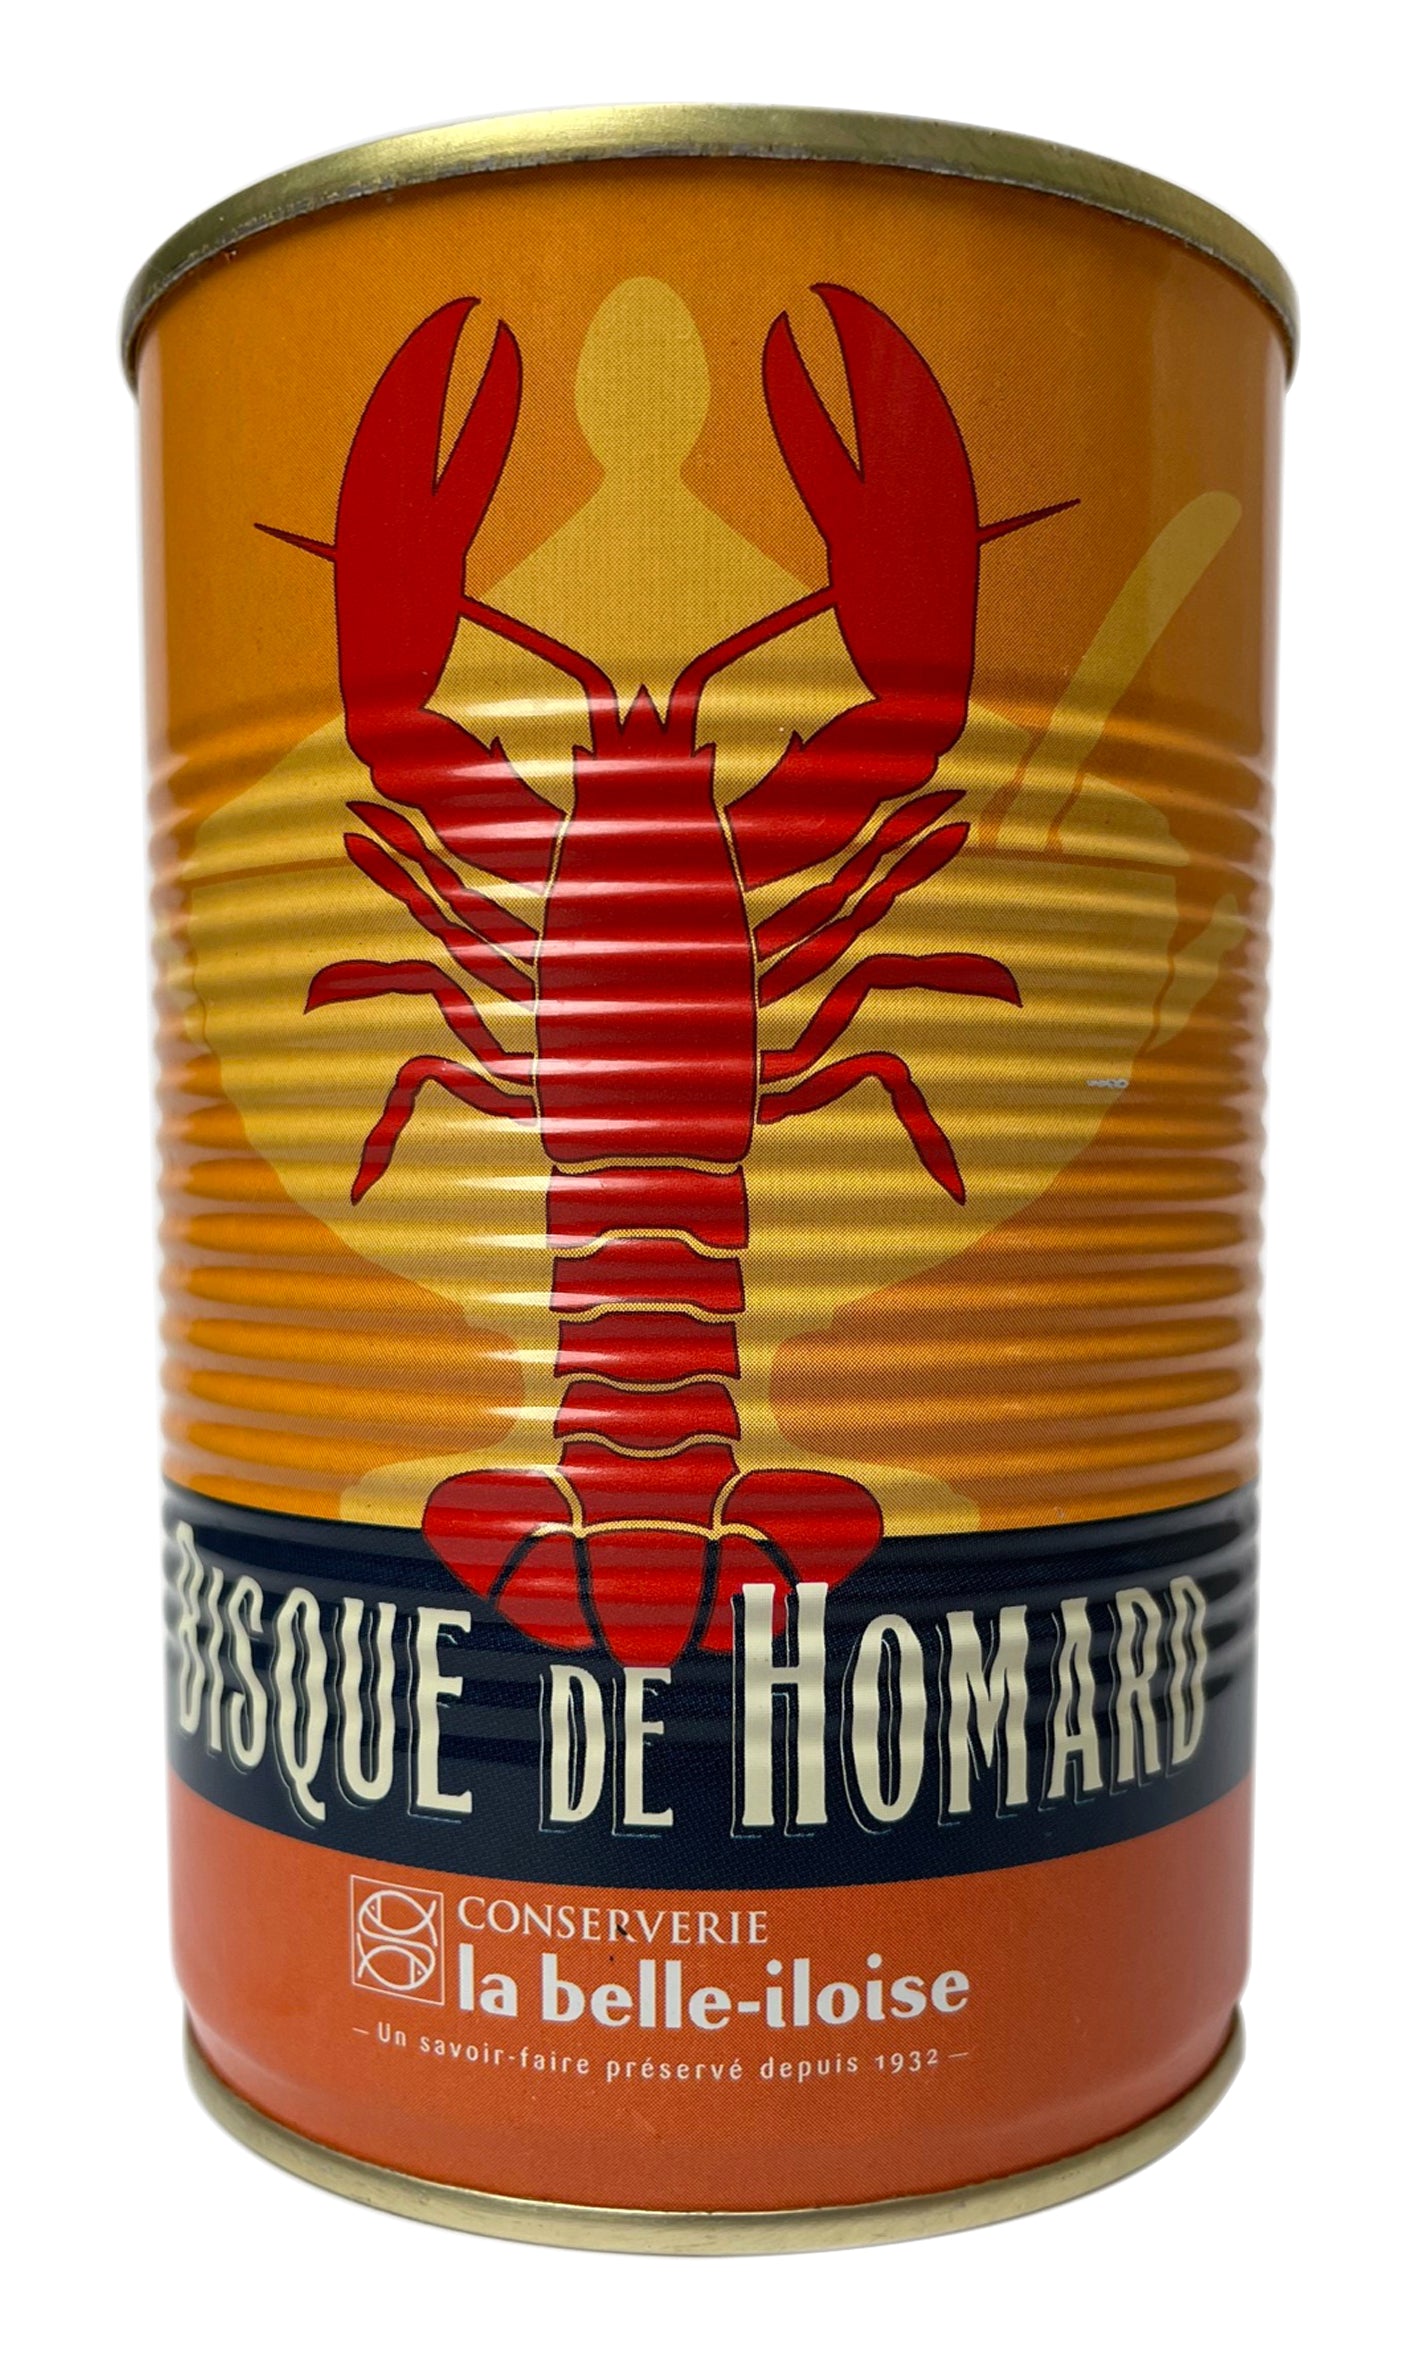 Conserverie la belle-iloise - Bisque de Homard (Lobster Bisque) - 400g